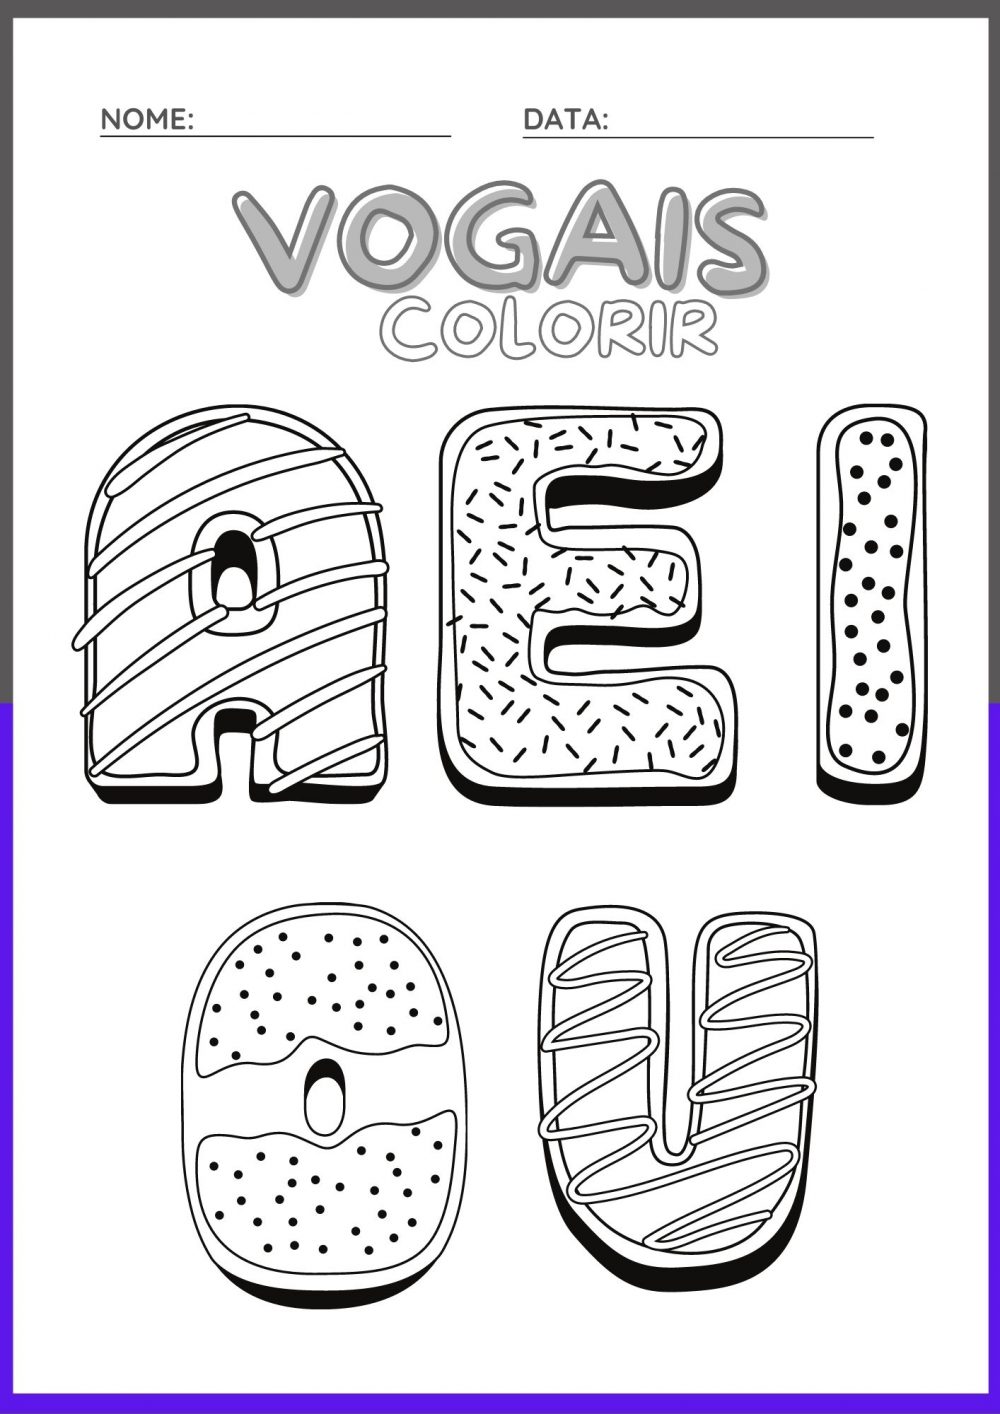 Fichas com Vogais Ilustradas para Colorir: CAPA